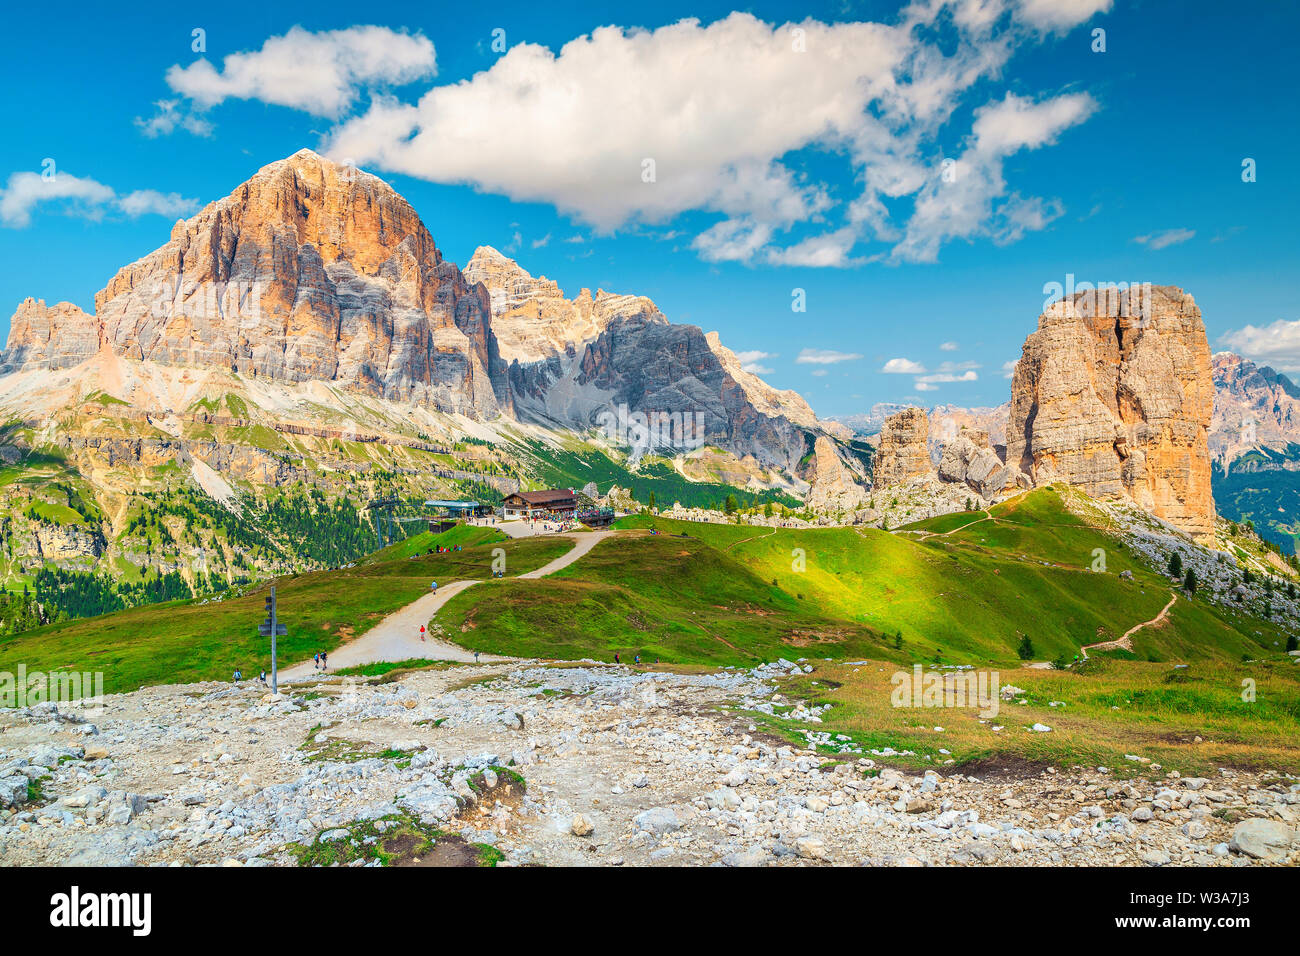 Fantastische Landschaft mit schönen Berge. Beliebte Wanderwege mit malerischen hohen Berge in der Nähe von Cinque Torri Felsformationen, Dolomiten, Ital Stockfoto